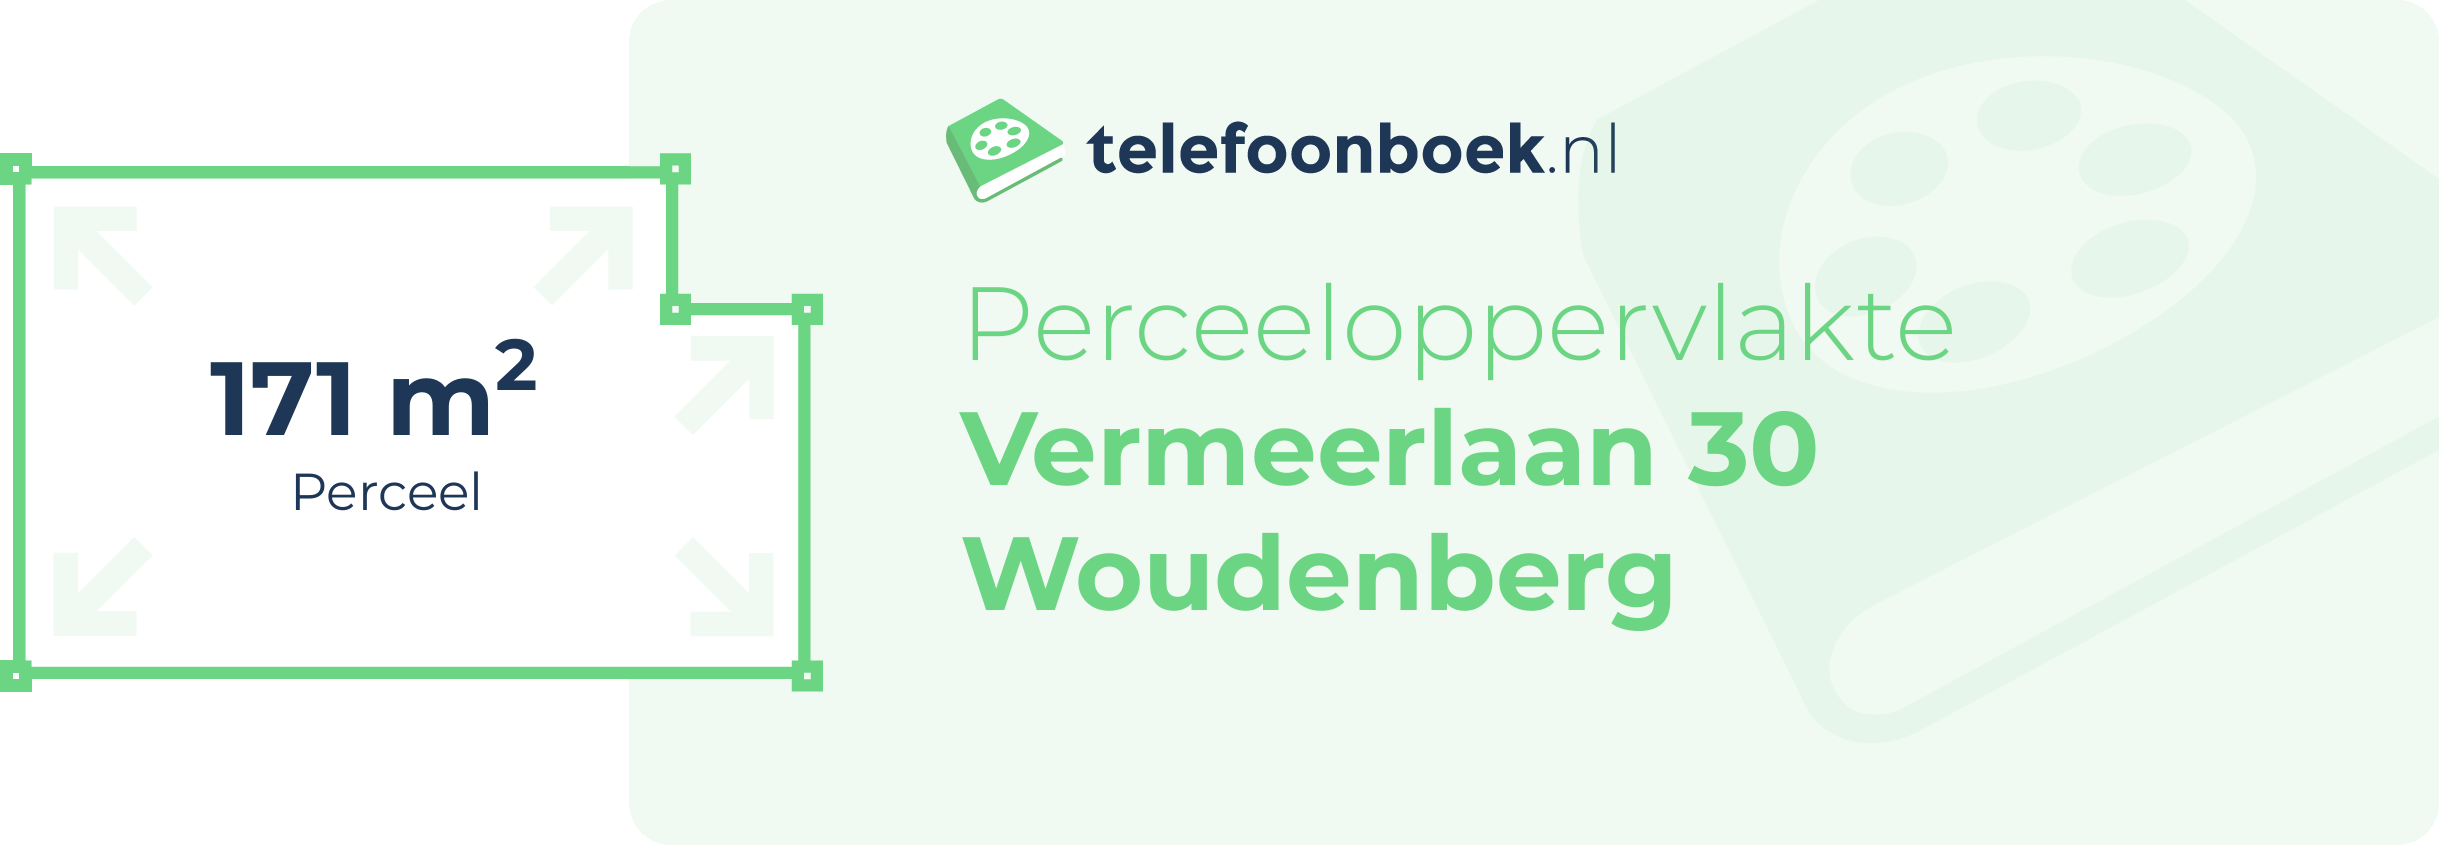 Perceeloppervlakte Vermeerlaan 30 Woudenberg